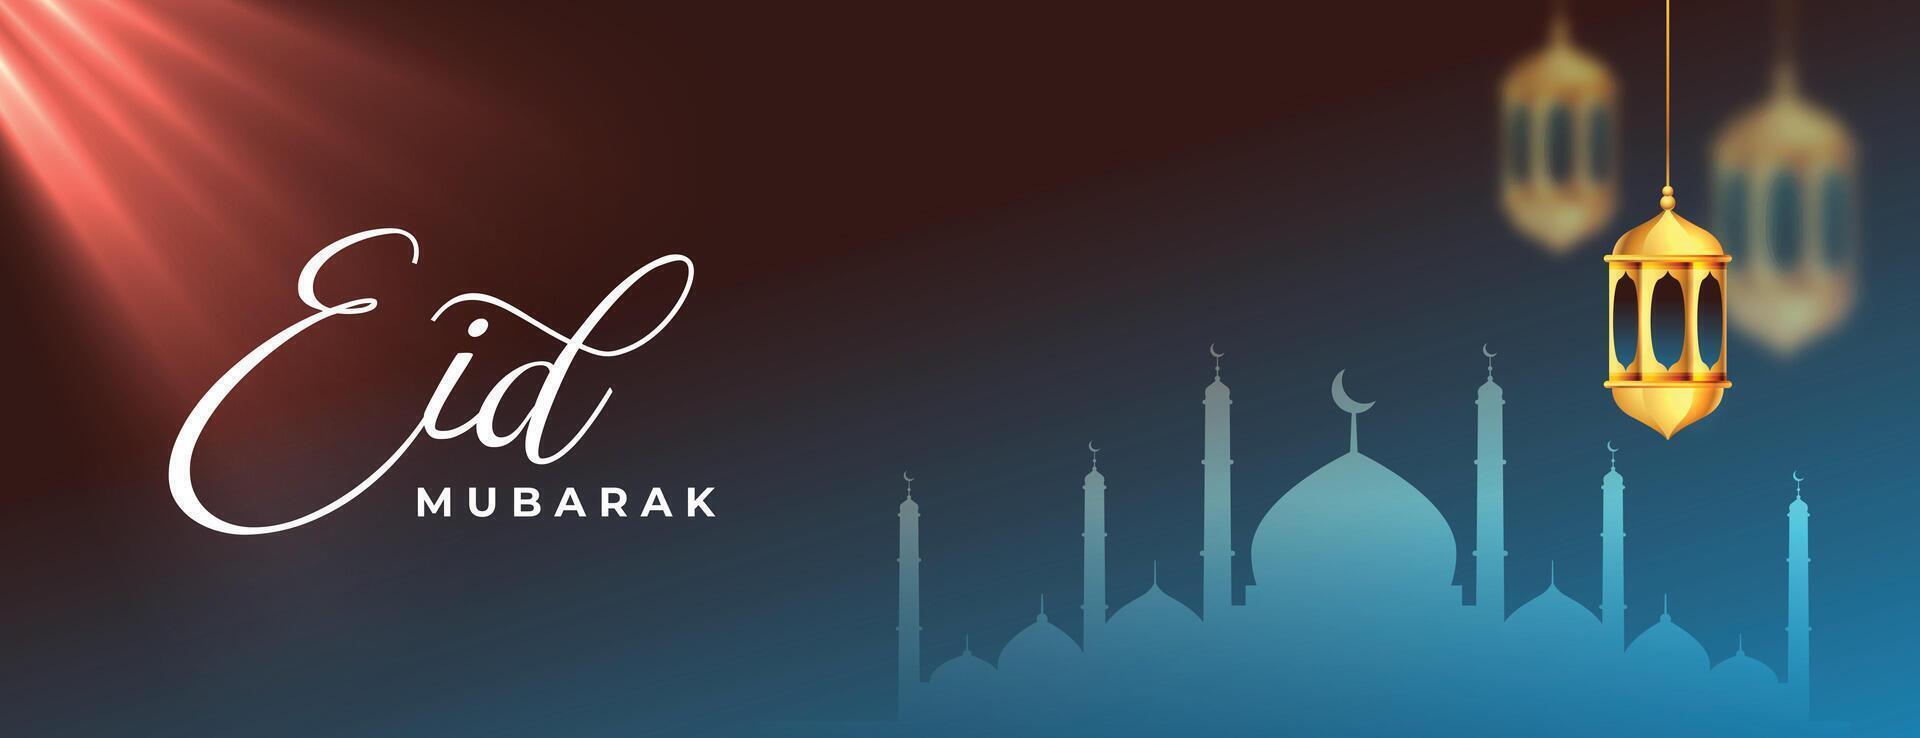 moslim eid mubarak realistisch lantaarn banier met licht effect vector